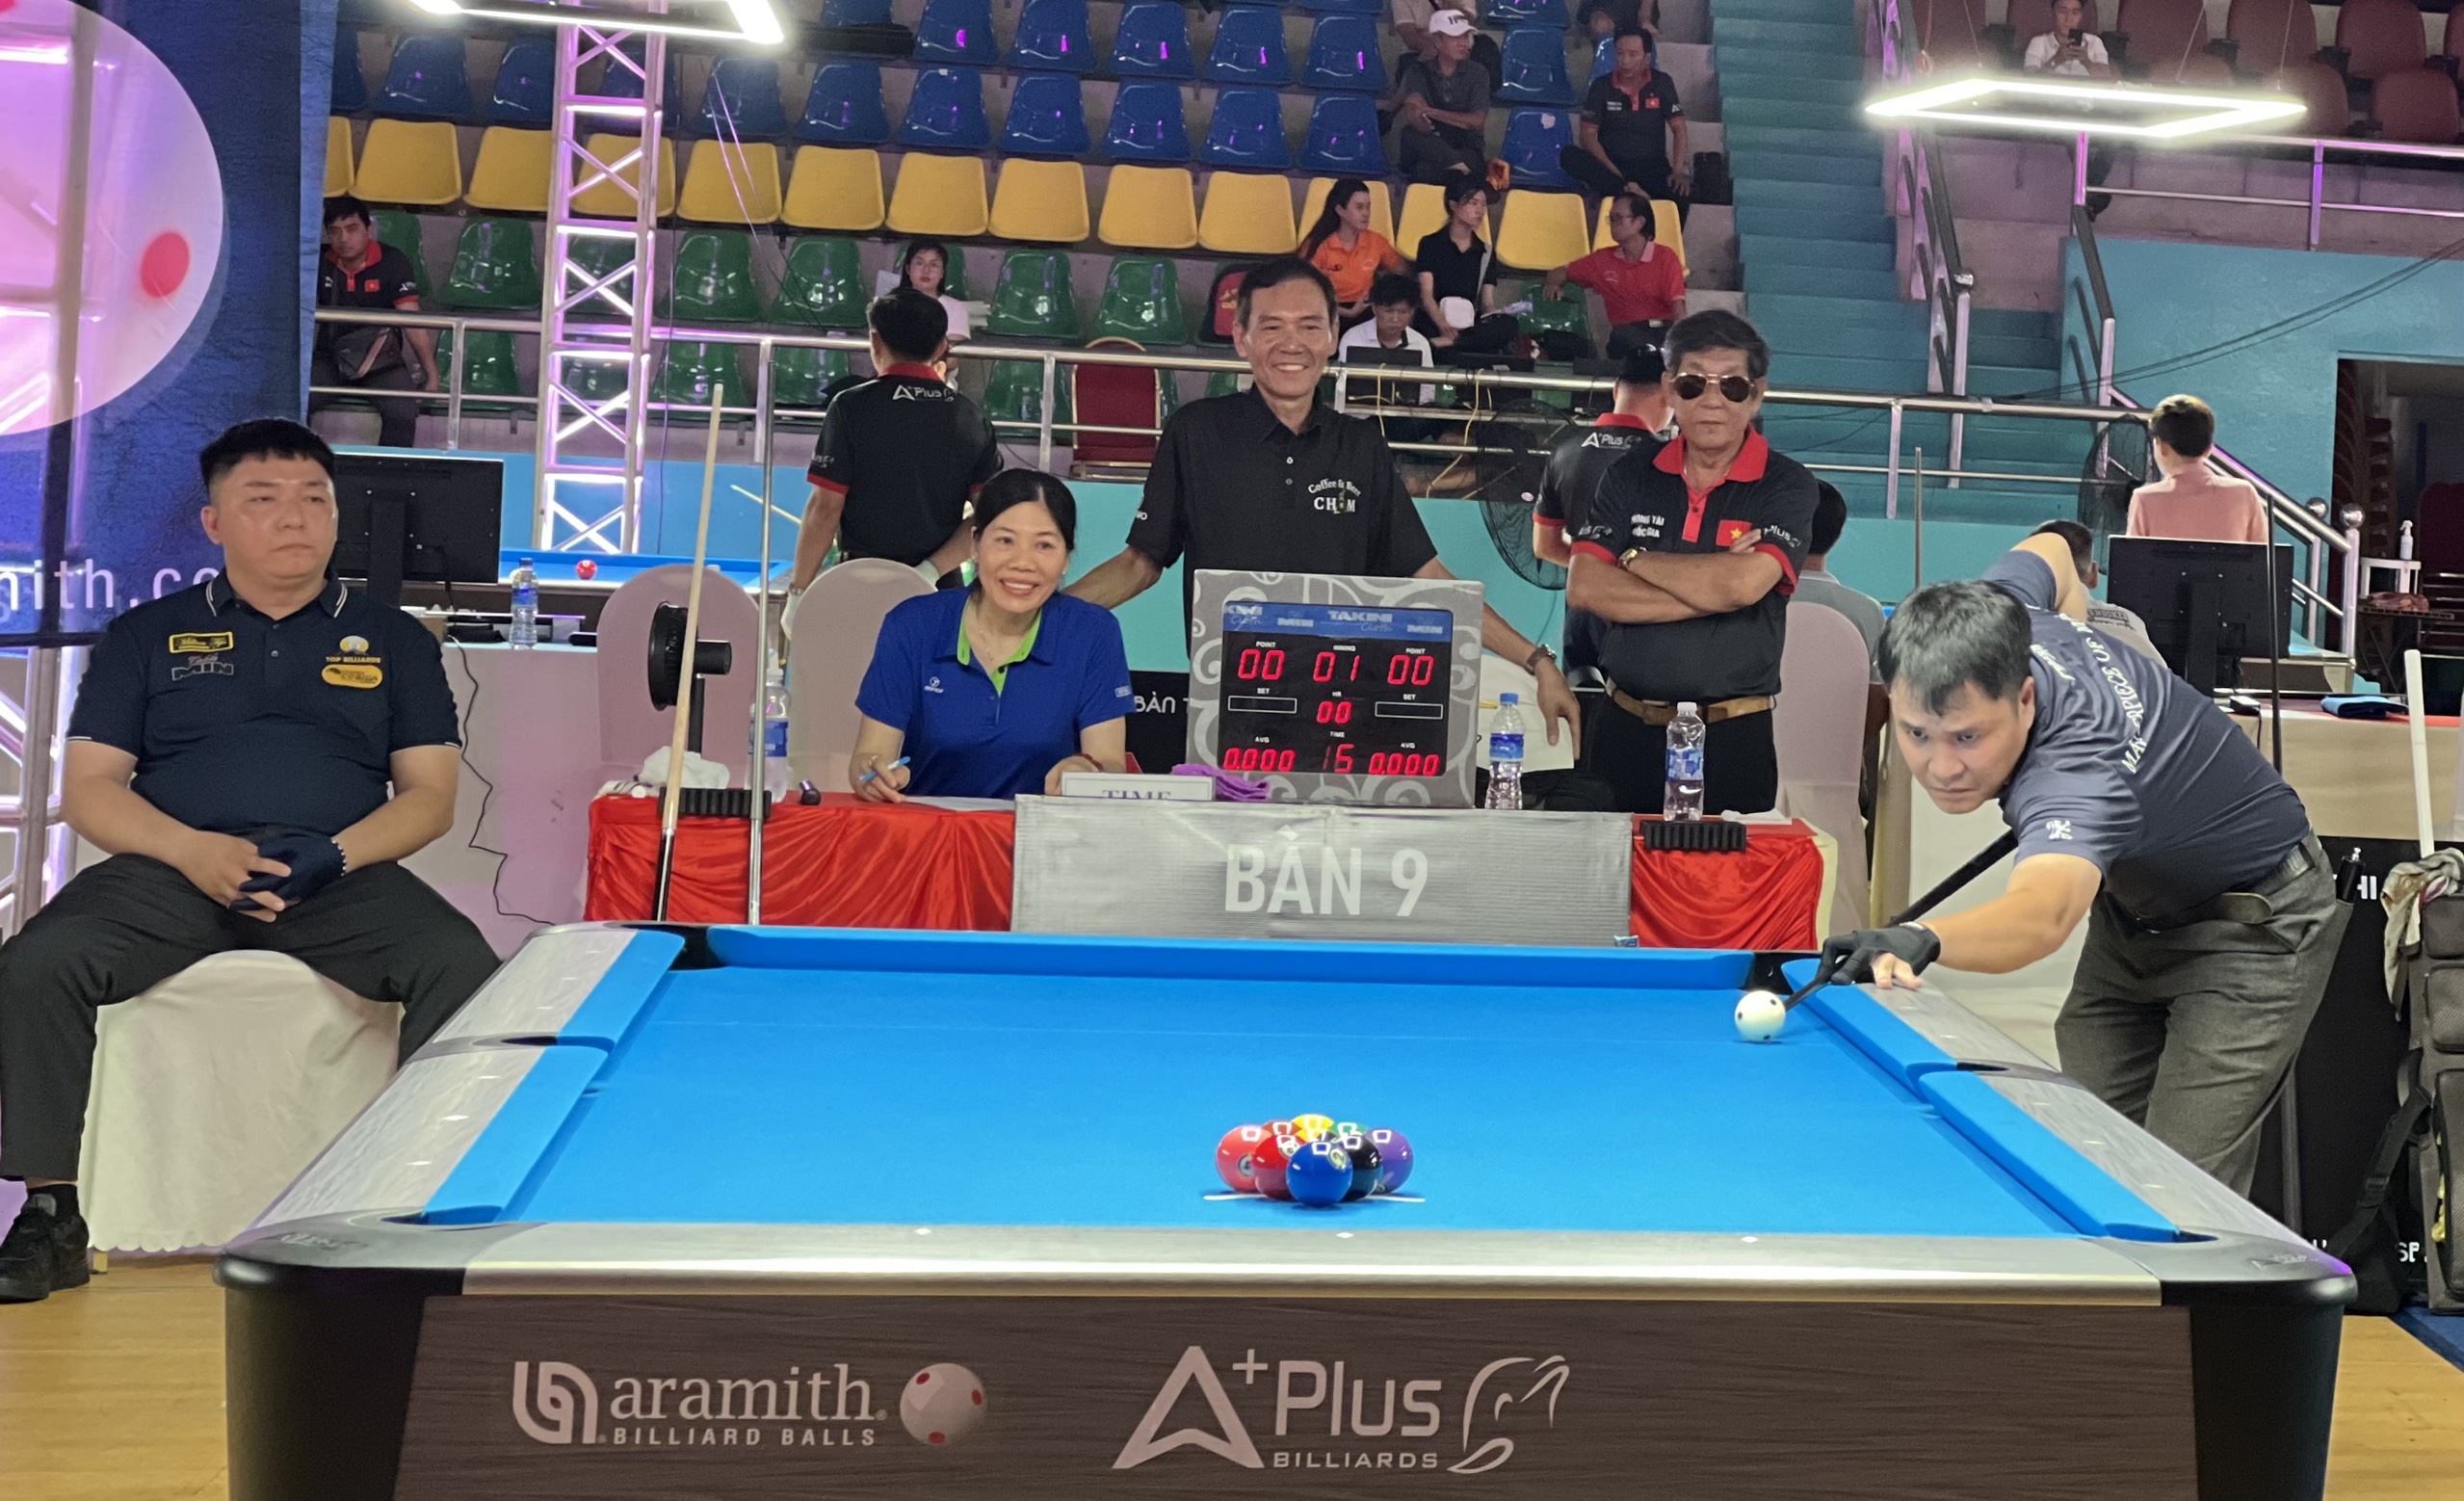 Cơ thủ Nguyễn Mạnh Tùng đội tuyển billiards và snooker Bà Rịa - Vũng Tàu thi đấu sau lễ khai mạc.